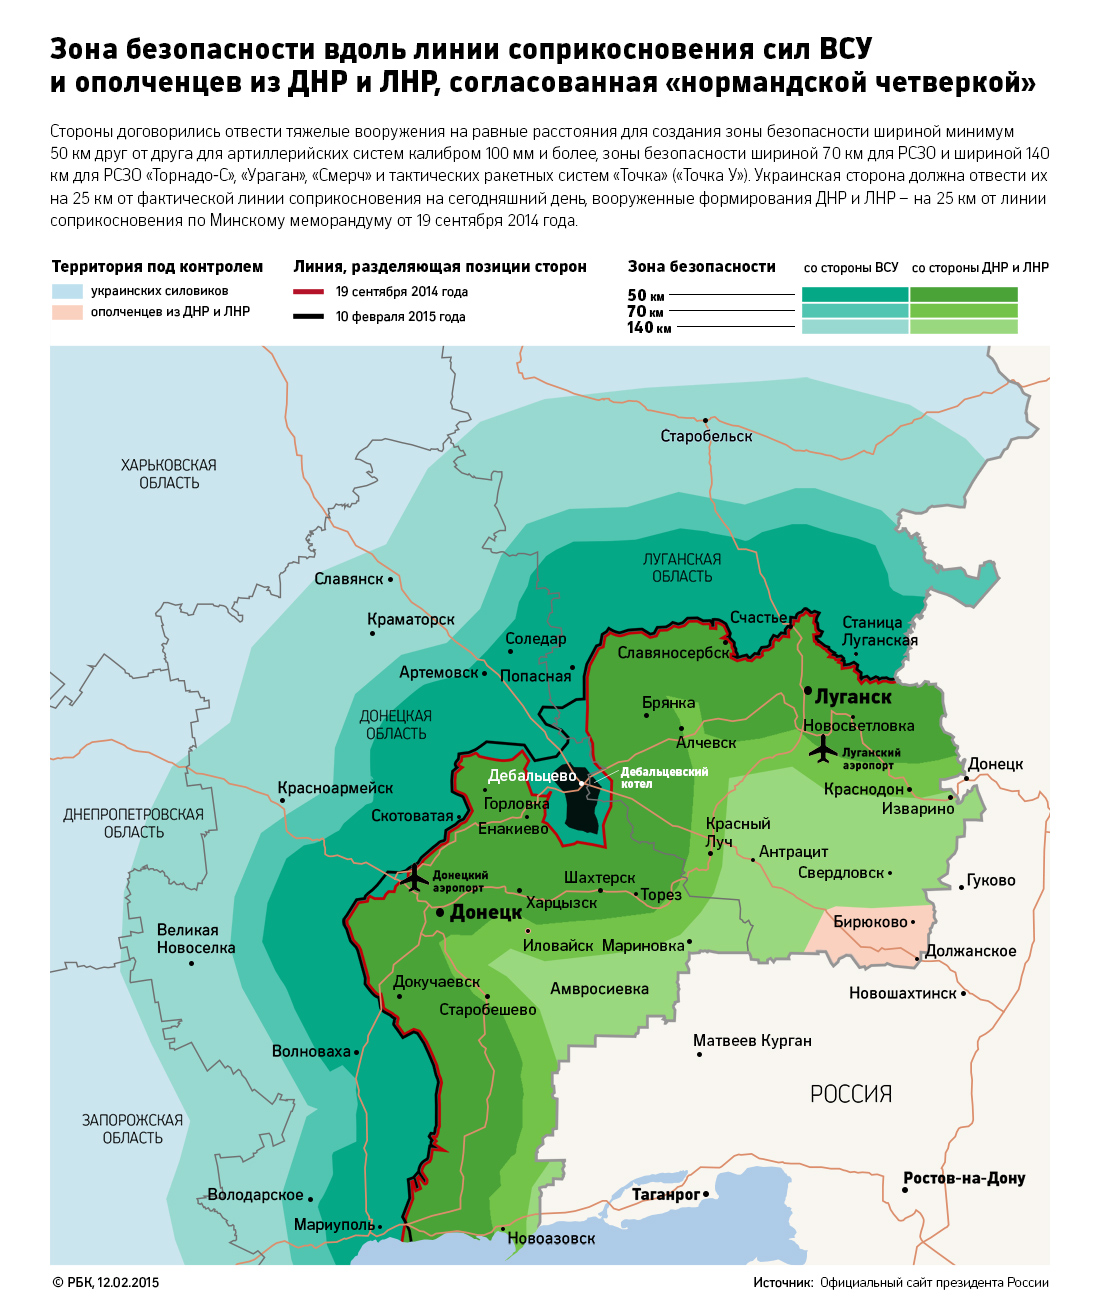 Киев согласится на отвод войск только после двух дней затишья в Донбассе